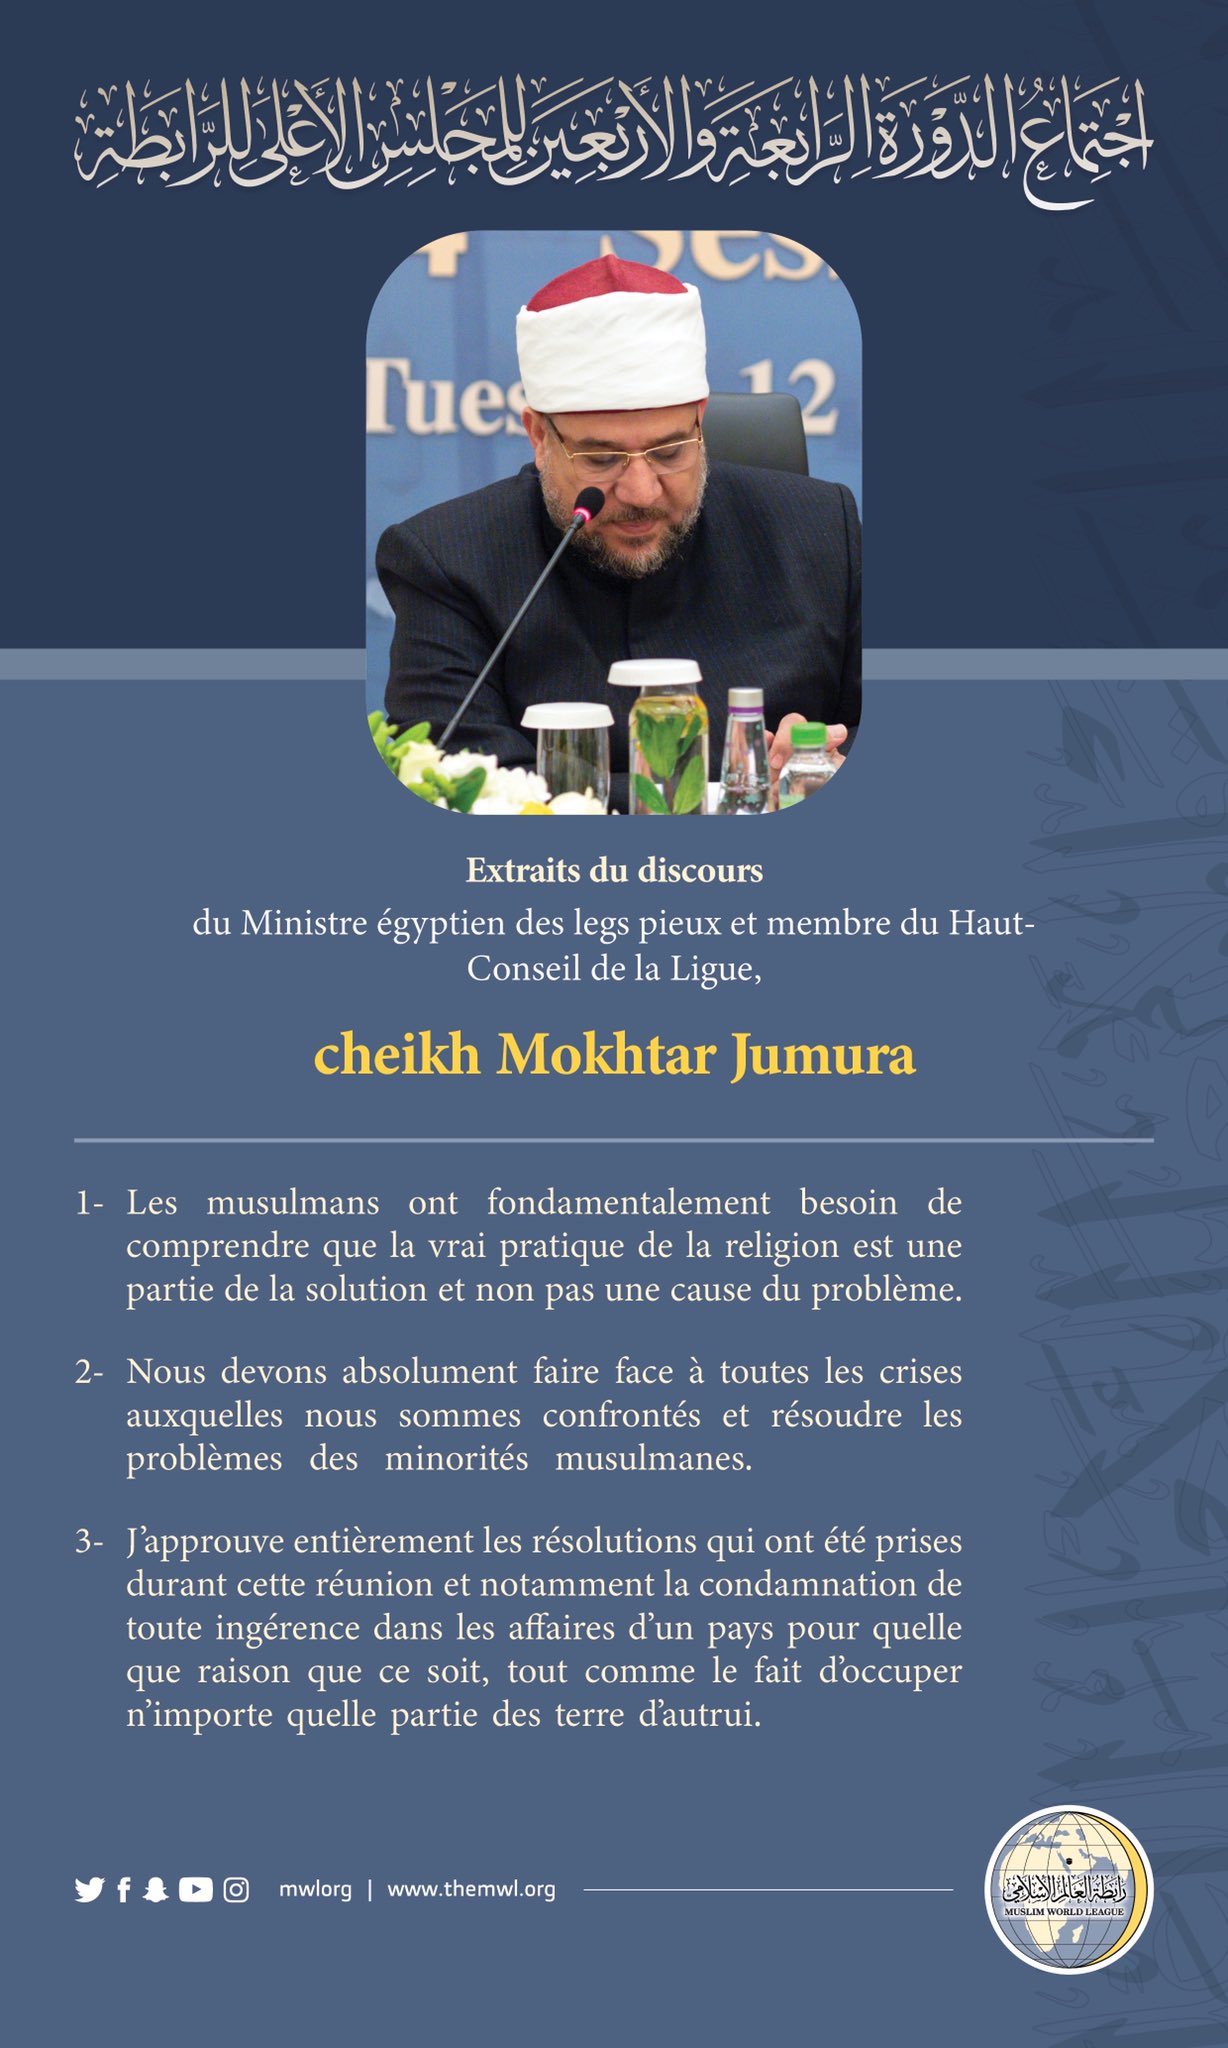 Extraits du discours du cheikh Mohammad Mokhtar Jumura, Ministre égyptien des legs pieux lors des travaux du Haut-Conseil de la Ligue islamique mondiale: